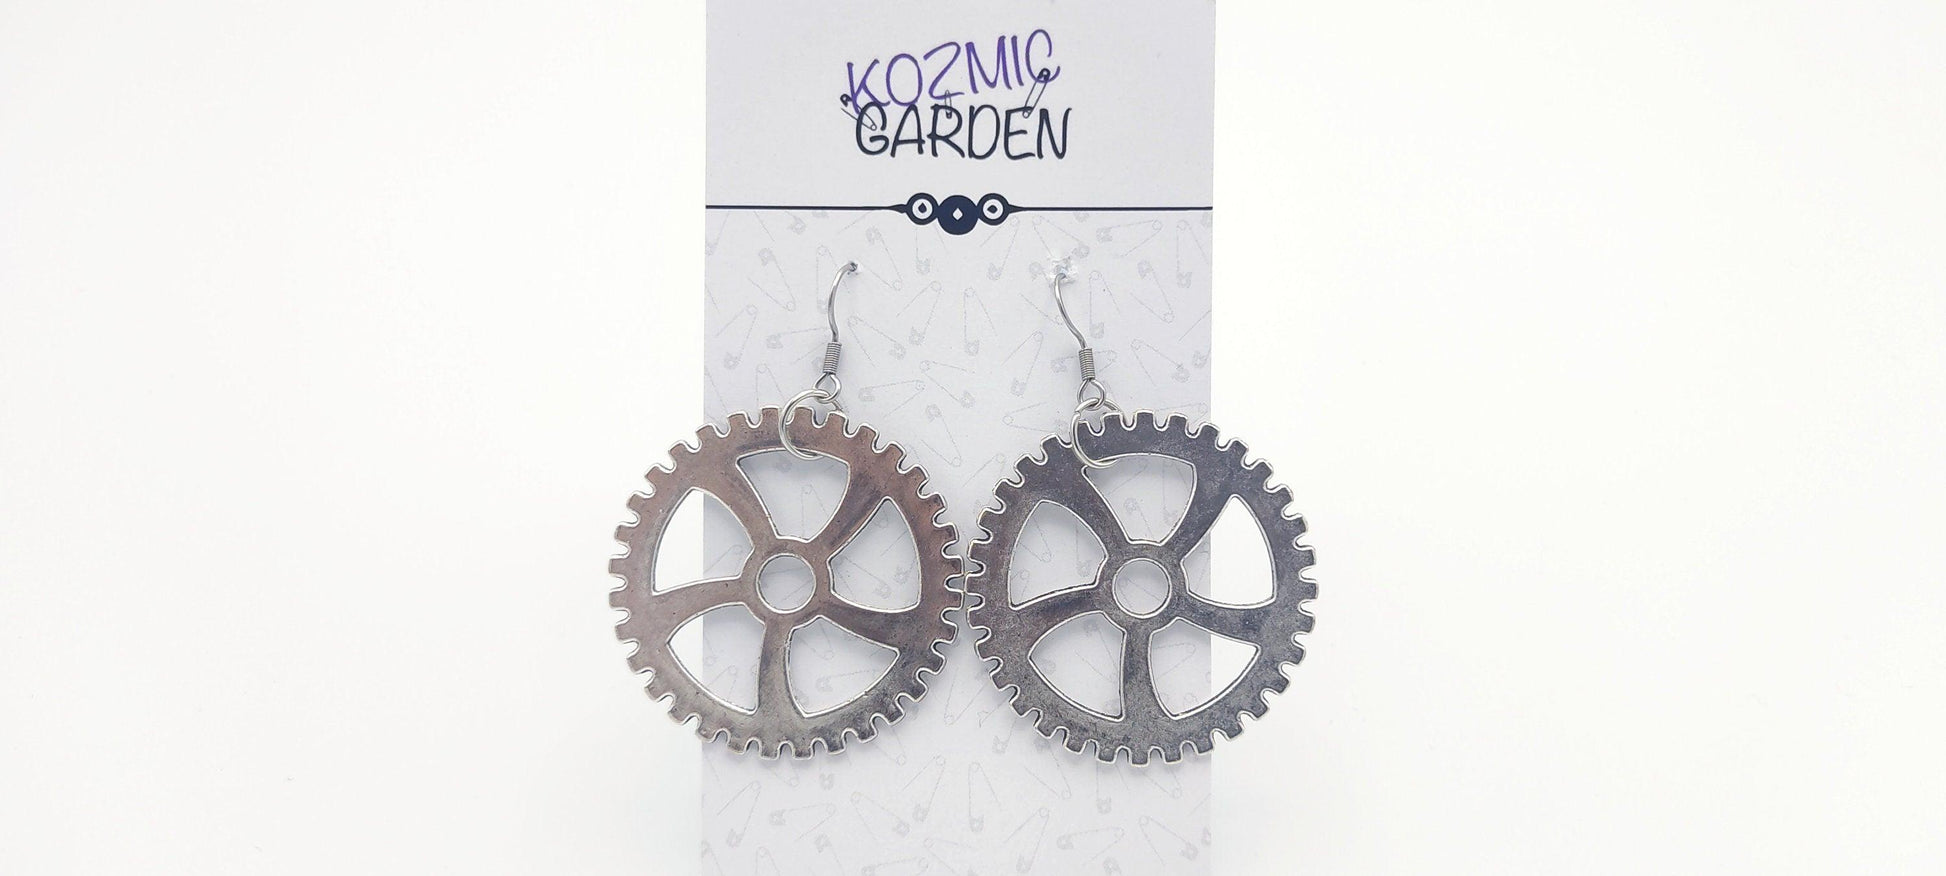 GEAR EARRINGS - Kozmic Garden